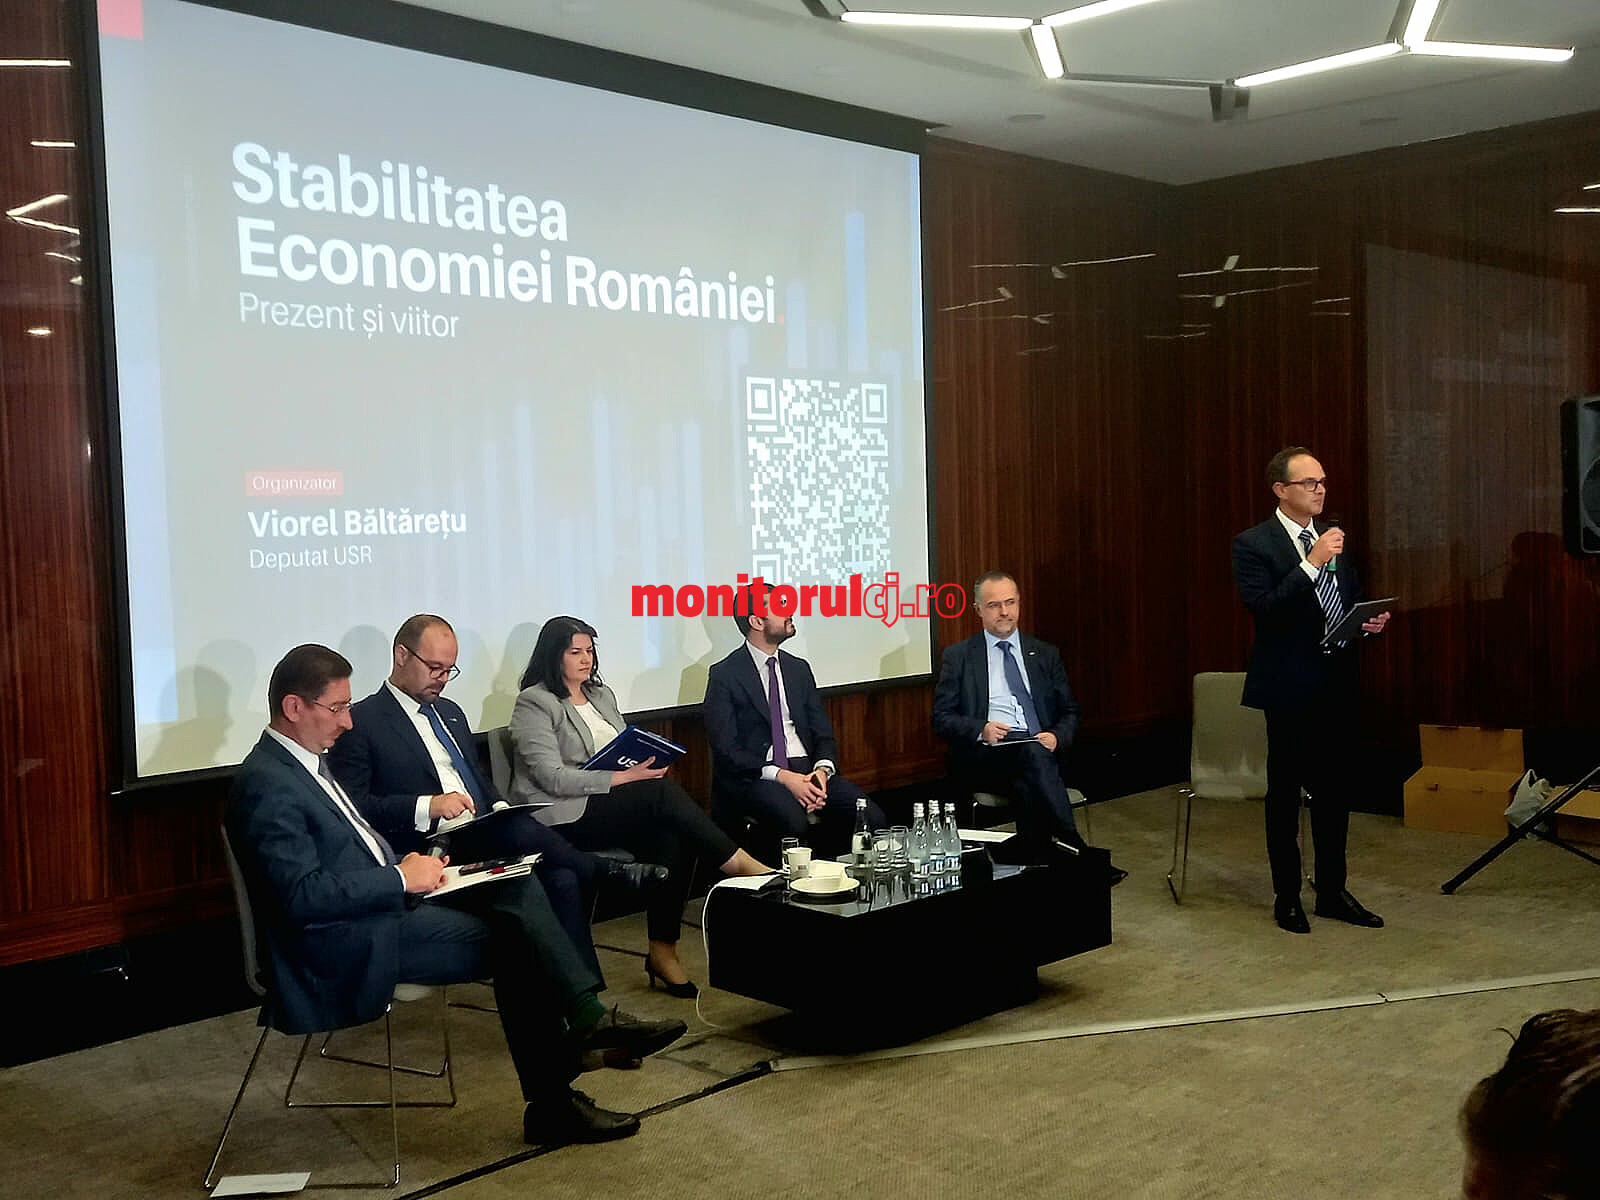 Starea economiei românești, dezbătută la Cluj de reprezentanți ai statului și mediul de afaceri. FOTO: Monitorul de Cluj